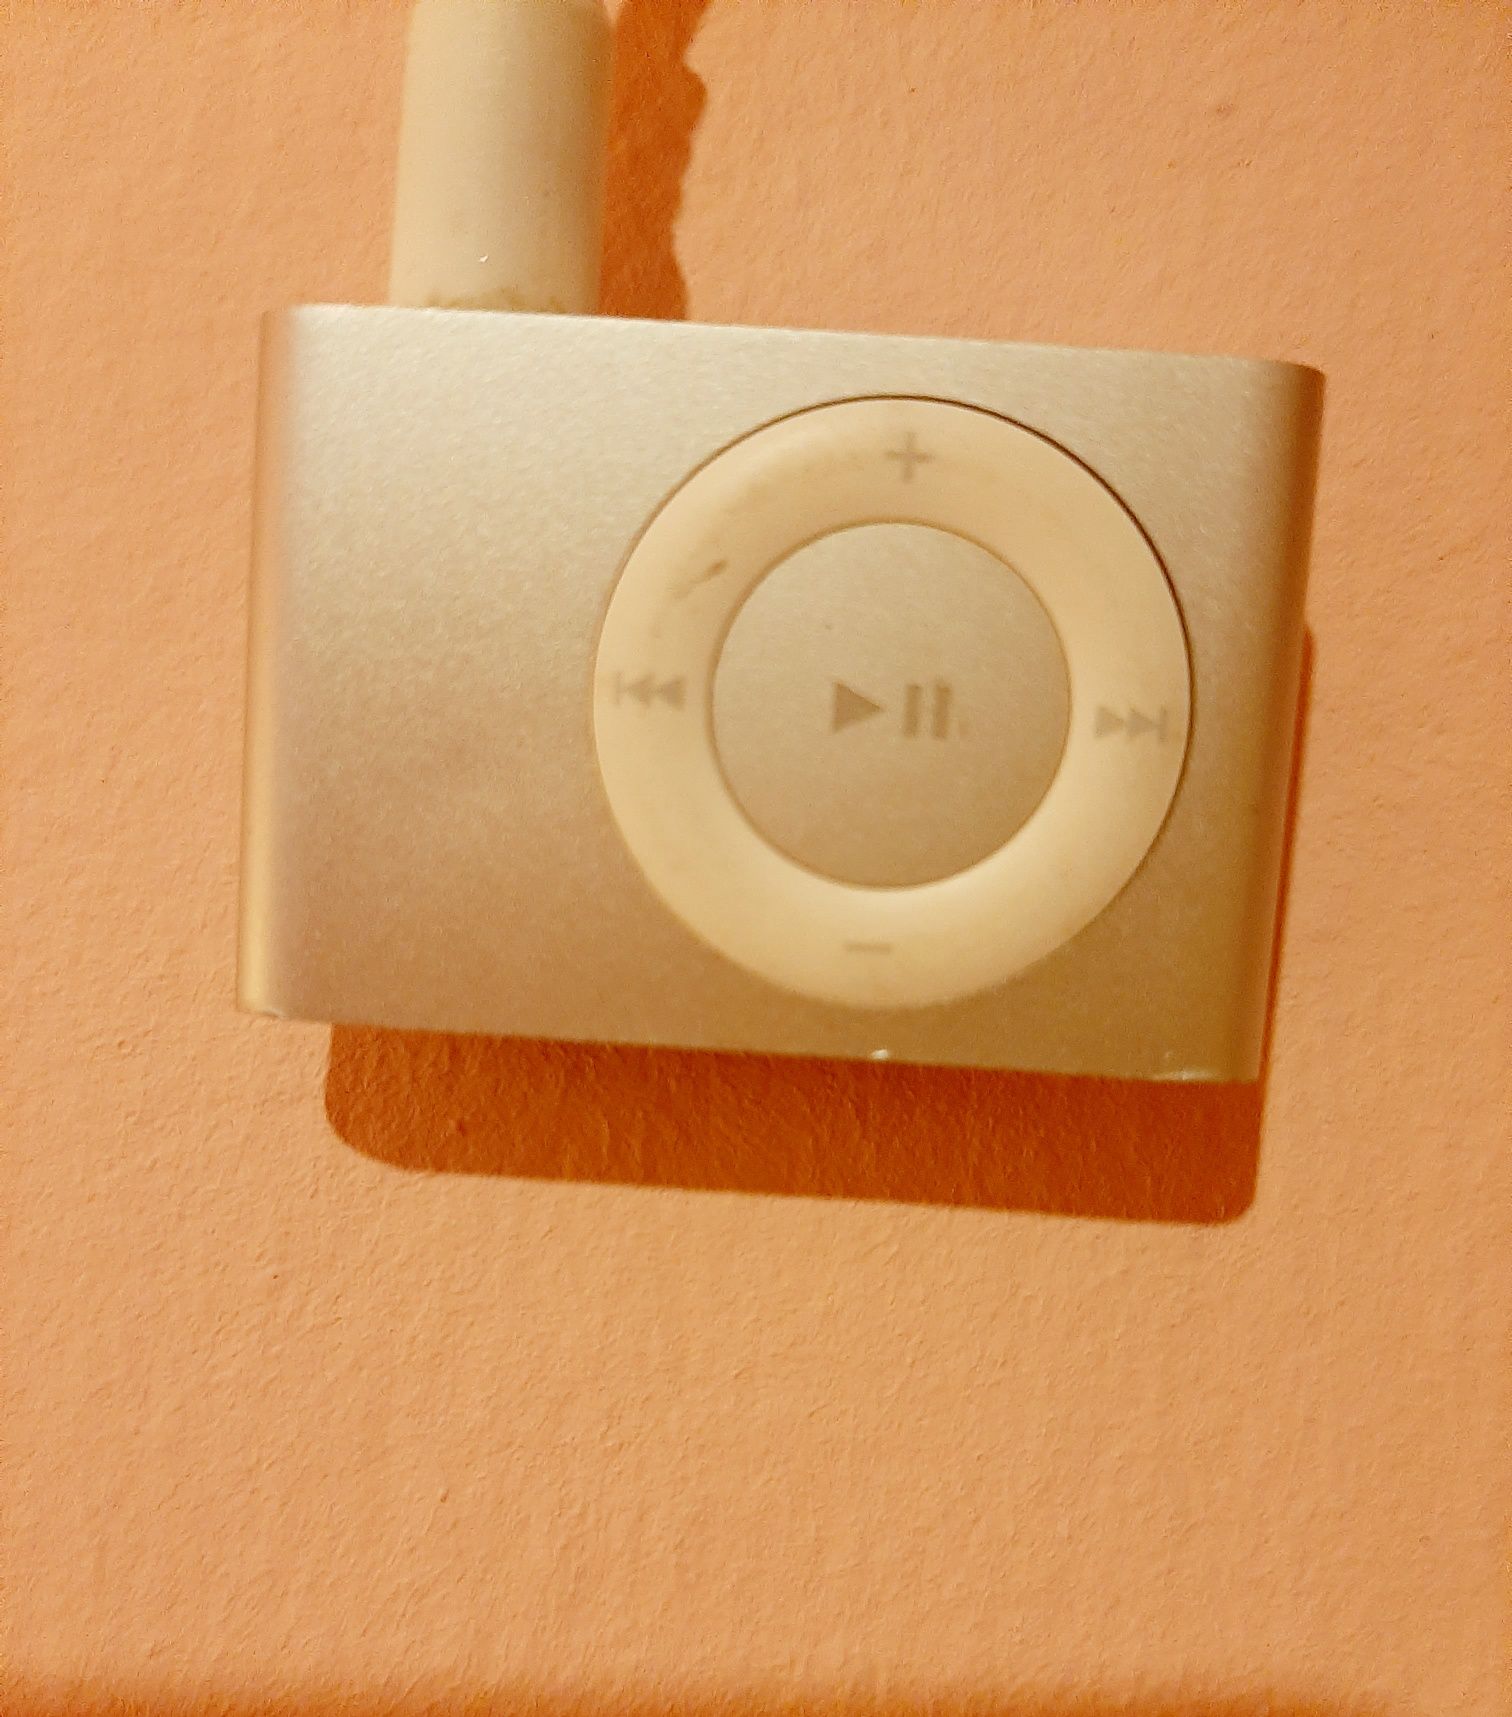 Apple iPod Shuffle audio player